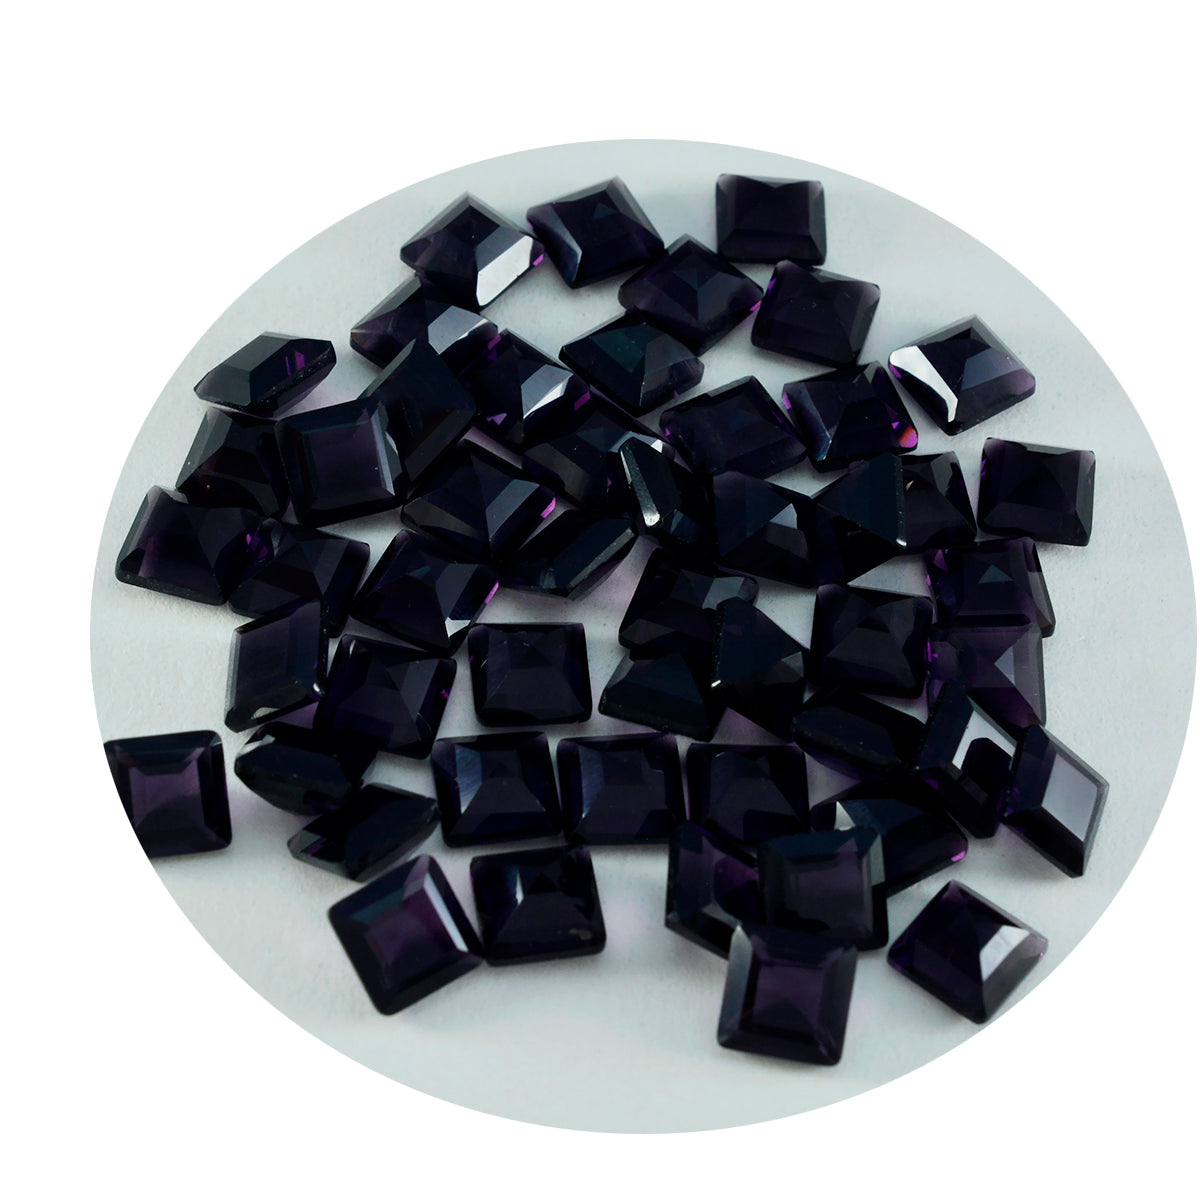 Riyogems 1 Stück violetter Amethyst mit CZ, facettiert, 7 x 7 mm, quadratische Form, Stein von hervorragender Qualität